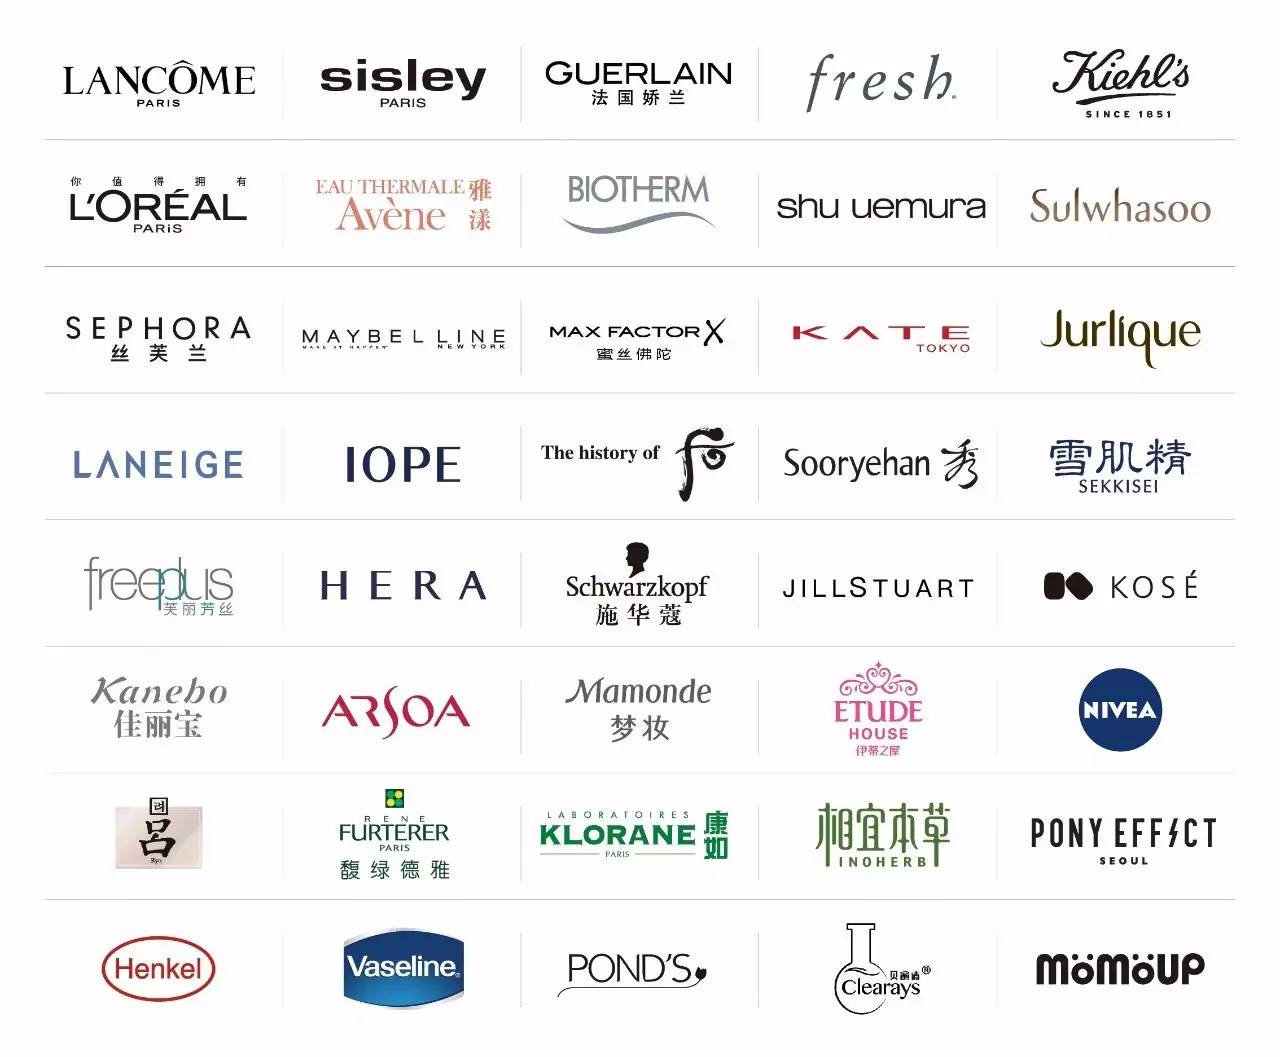 外高桥国际化妆品体验馆盛大开业丽人丽妆携众品牌强势入驻